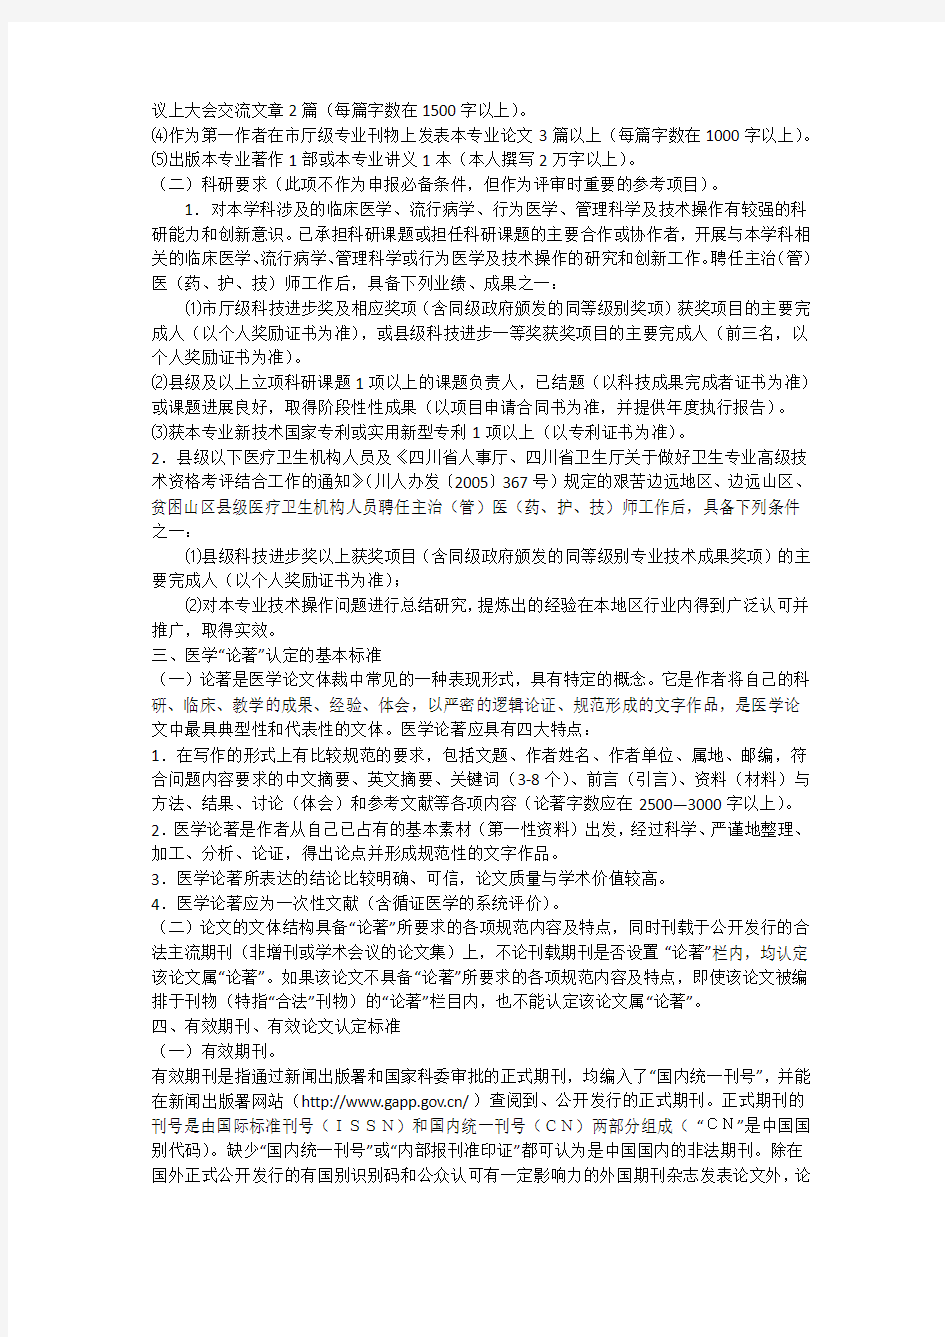 四川省卫生厅关于2012年全省卫生专业技术高级职称评审论文及科研要求的通知